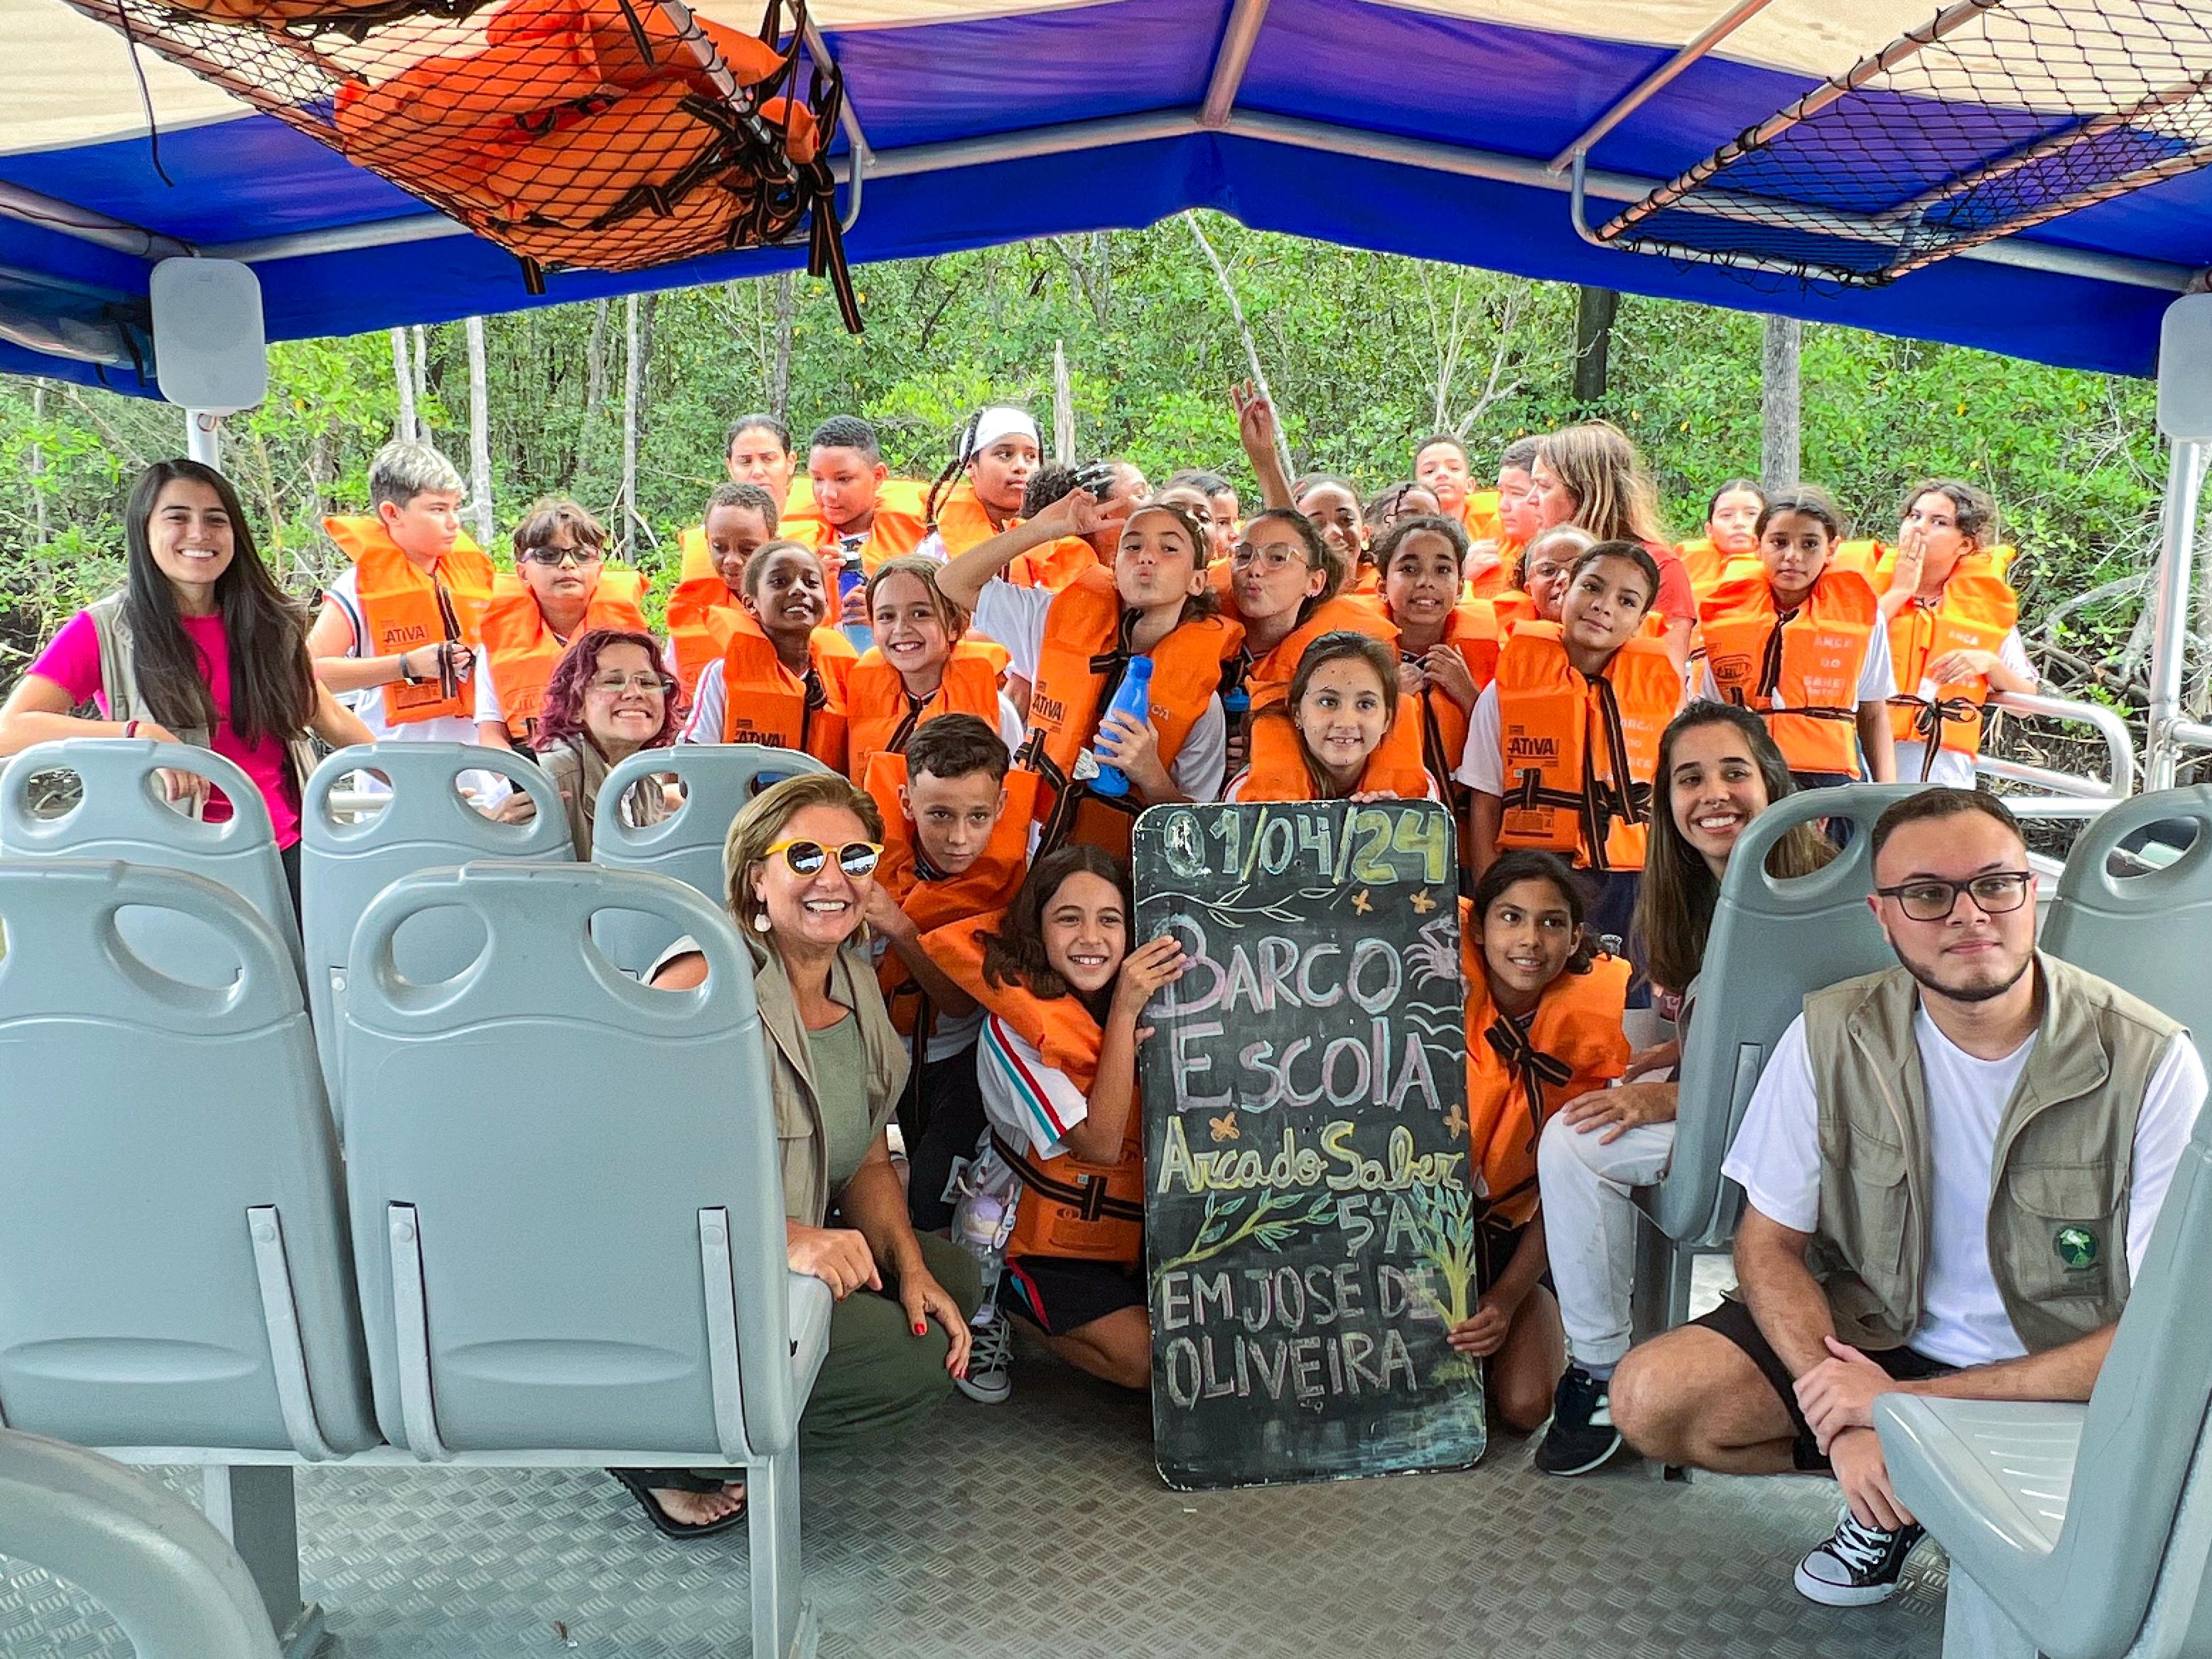 Barco Escola ‘Arca do Saber’ leva alunos da rede municipal para uma tarde de aprendizado sobre biodiversidade